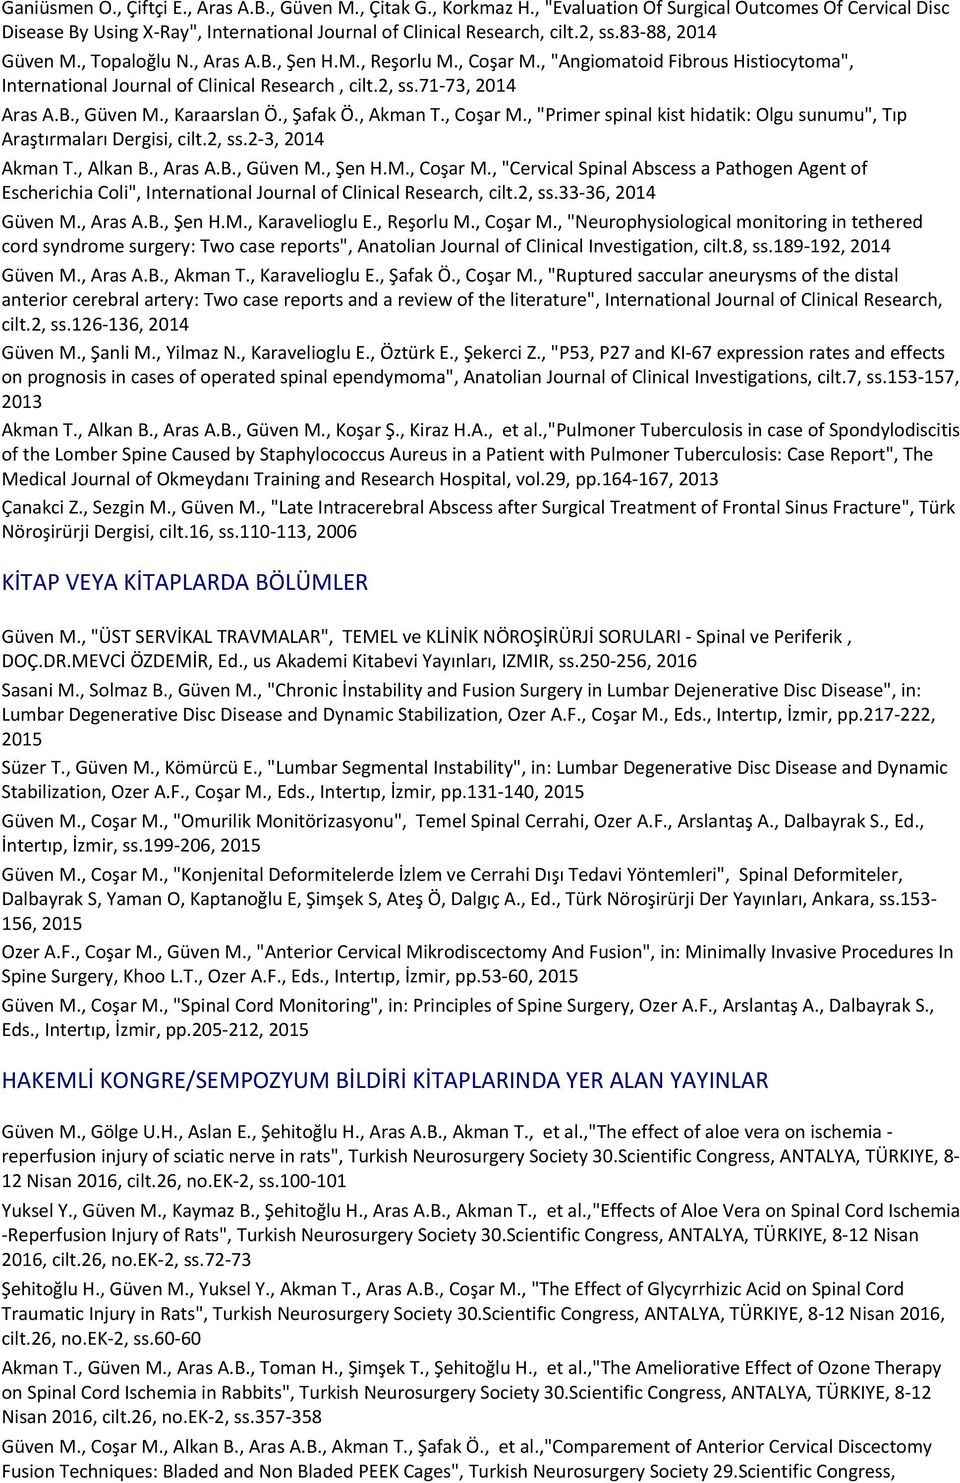 , Karaarslan Ö., Şafak Ö., Akman T., Coşar M., "Primer spinal kist hidatik: Olgu sunumu", Tıp Araştırmaları Dergisi, cilt.2, ss.2-3, 2014 Akman T., Alkan B., Aras A.B., Güven M., Şen H.M., Coşar M., "Cervical Spinal Abscess a Pathogen Agent of Escherichia Coli", International Journal of Clinical Research, cilt.